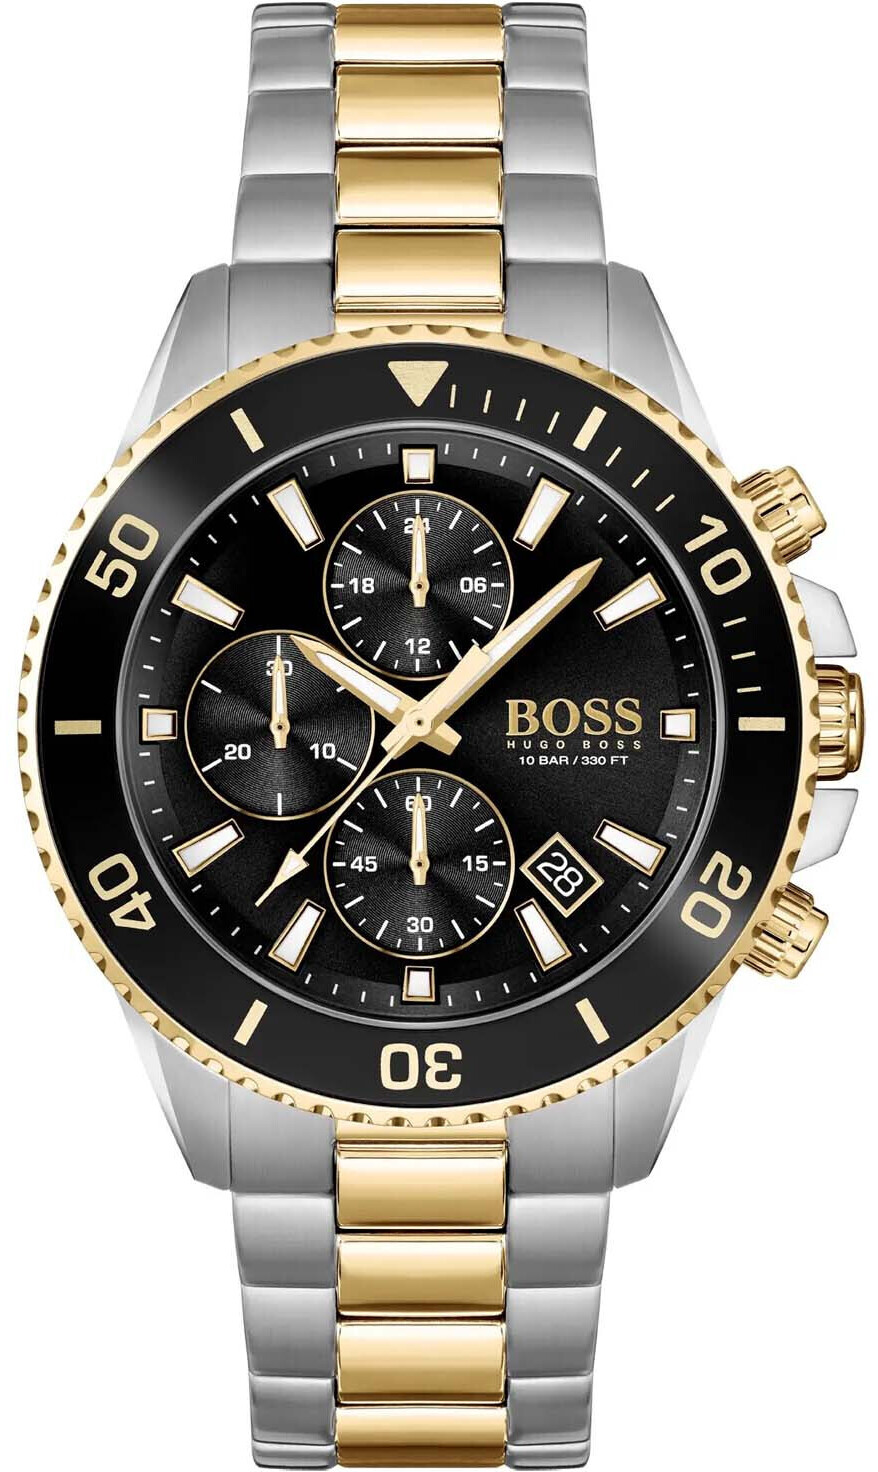 Photos - Wrist Watch Hugo Boss Admiral 1513908 